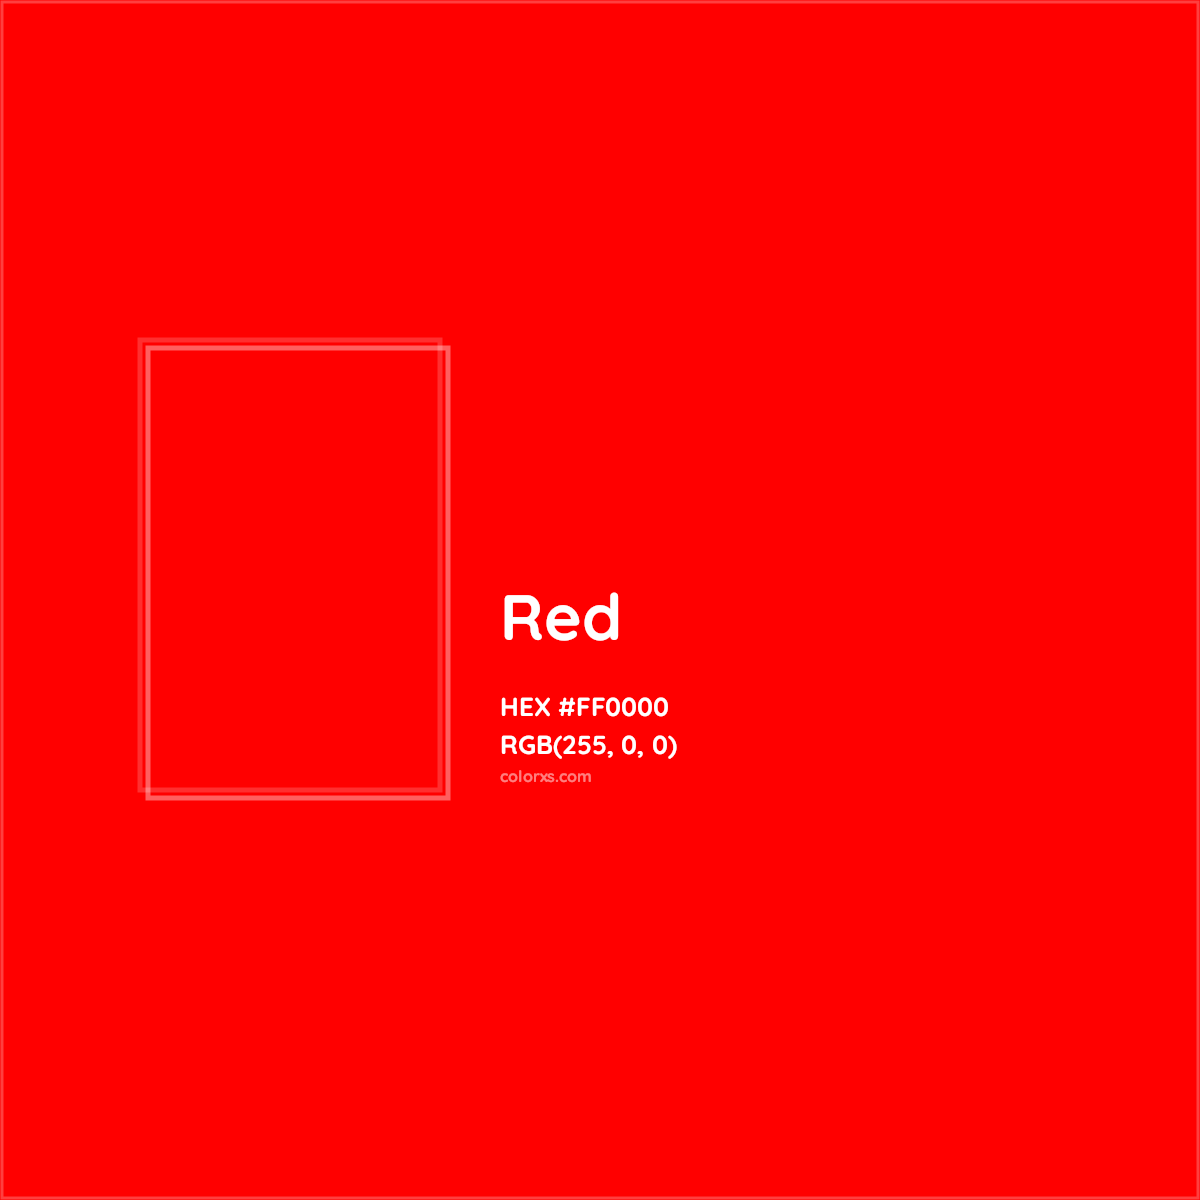 About Red - Color codes, similar colors paints colorxs.com